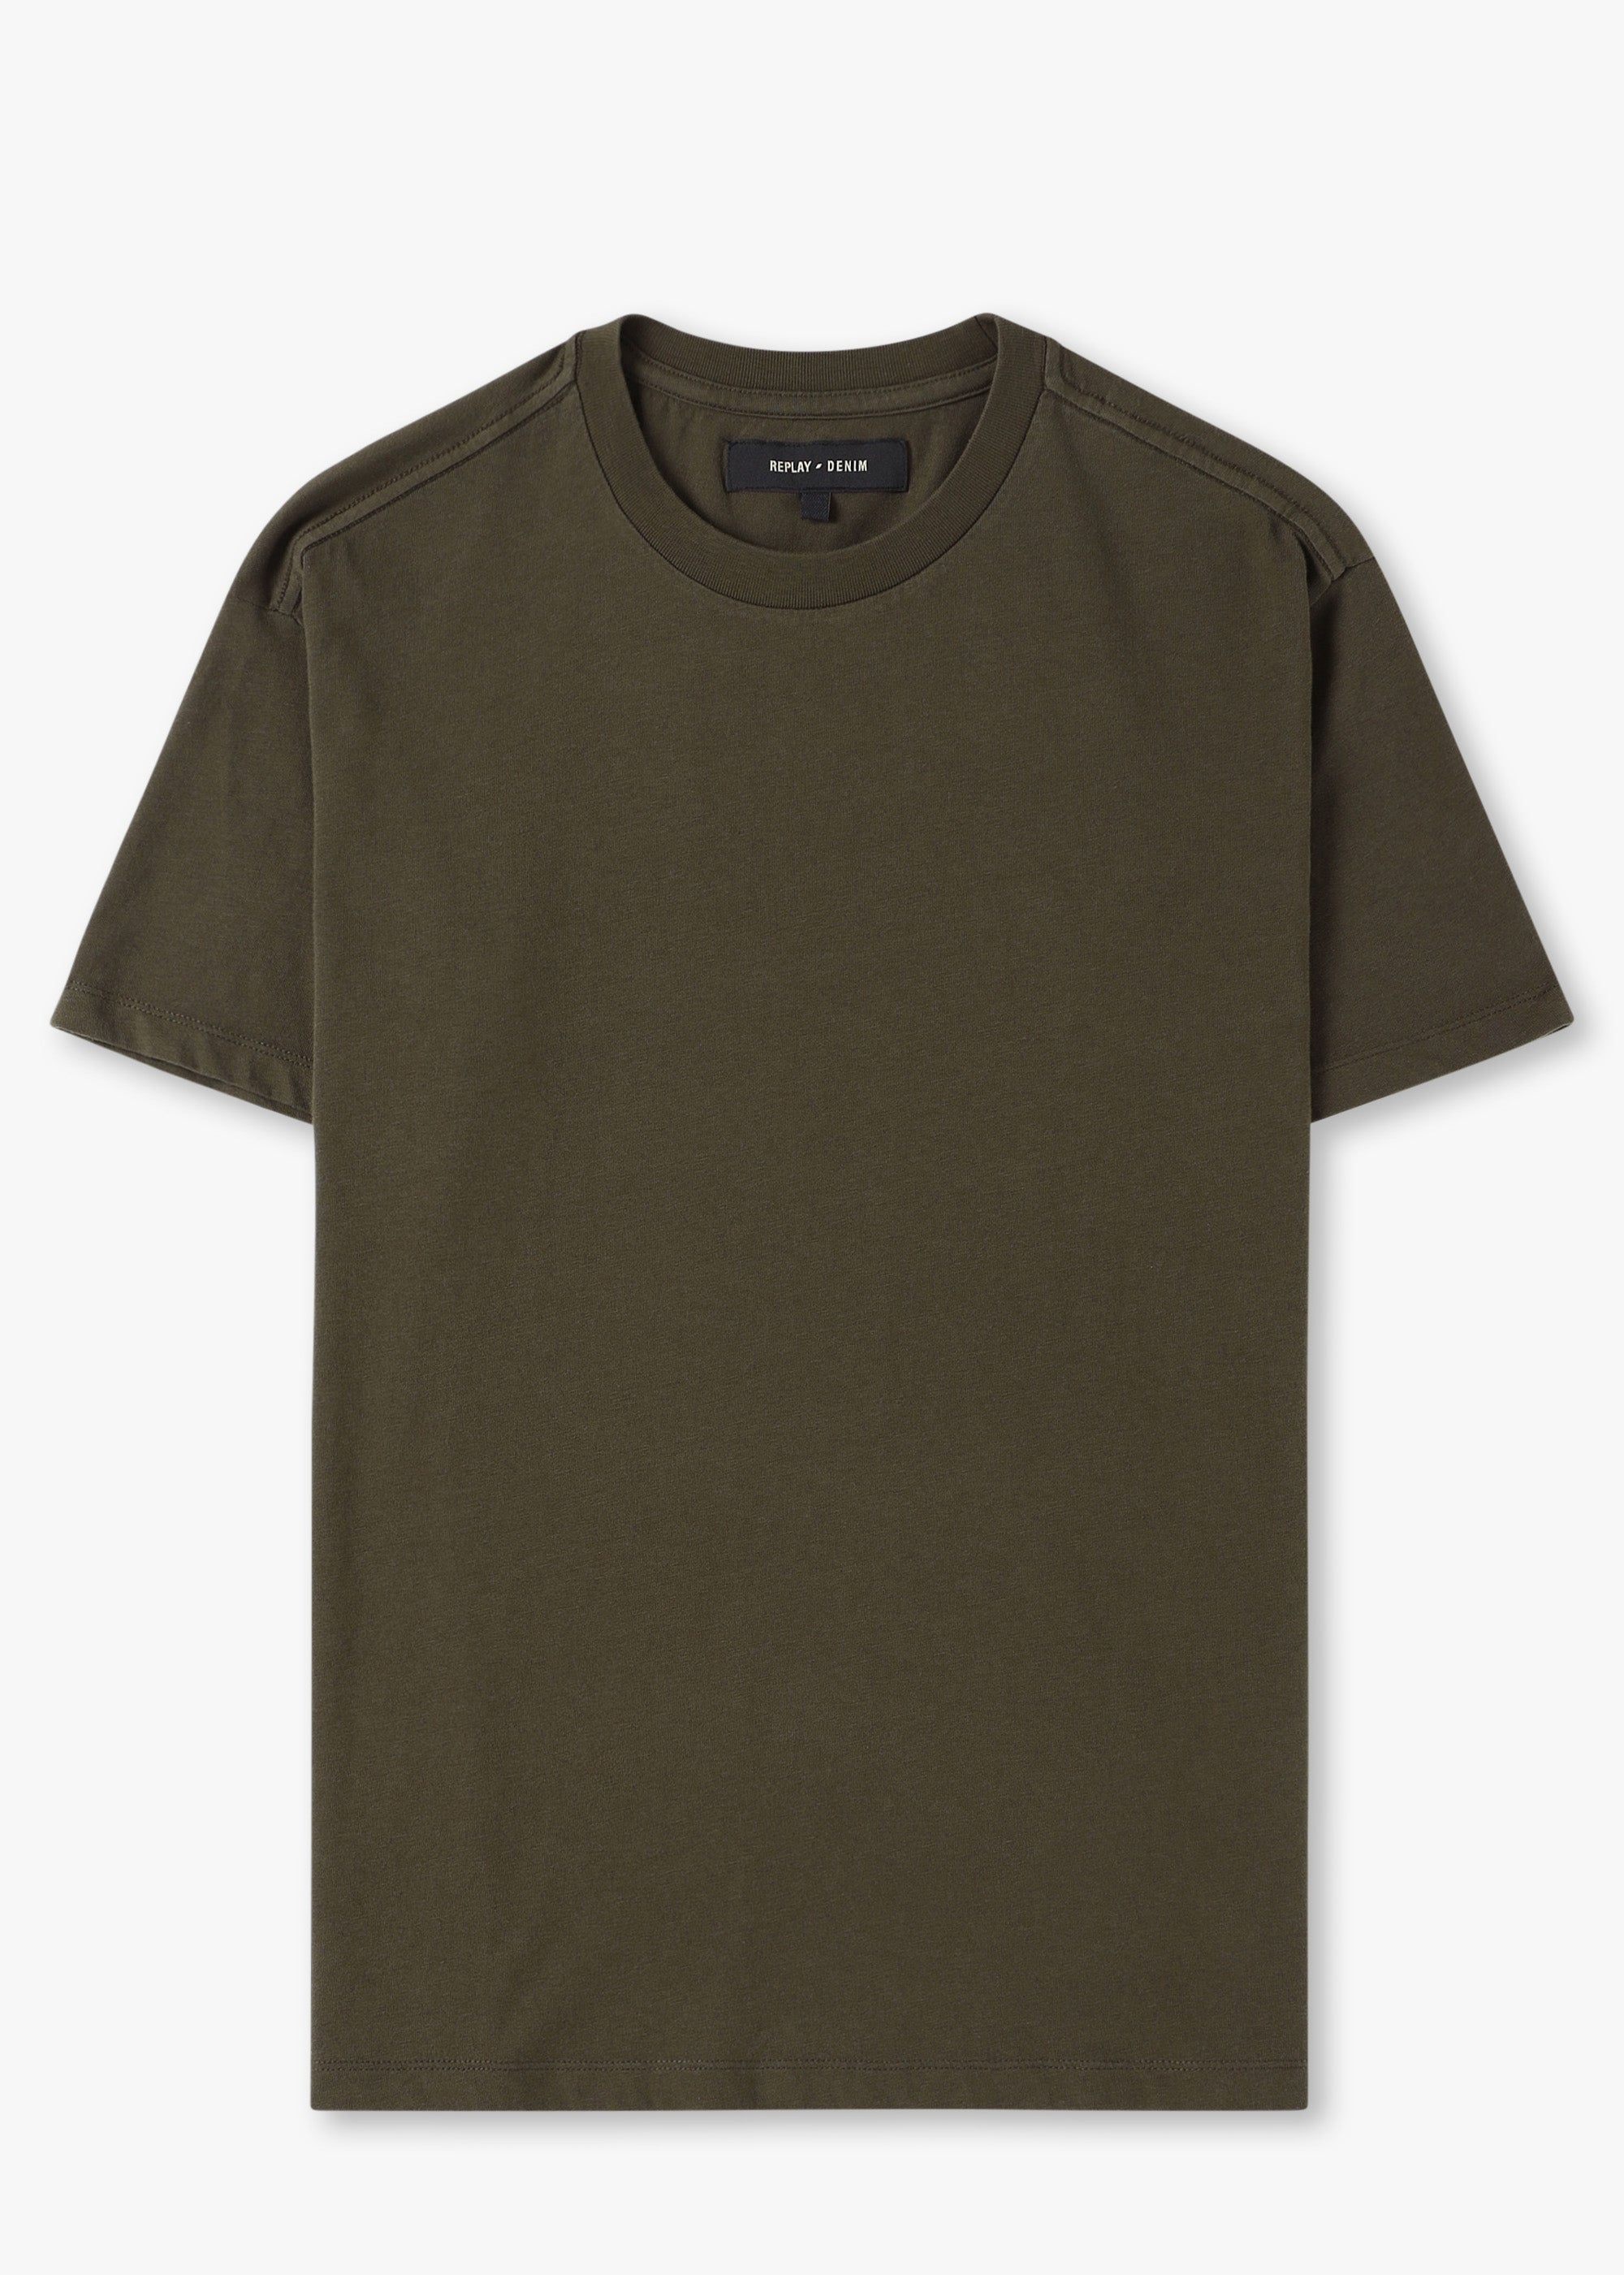 Replay Sartoriale Replay Mens Sartoriale T-shirt In Military